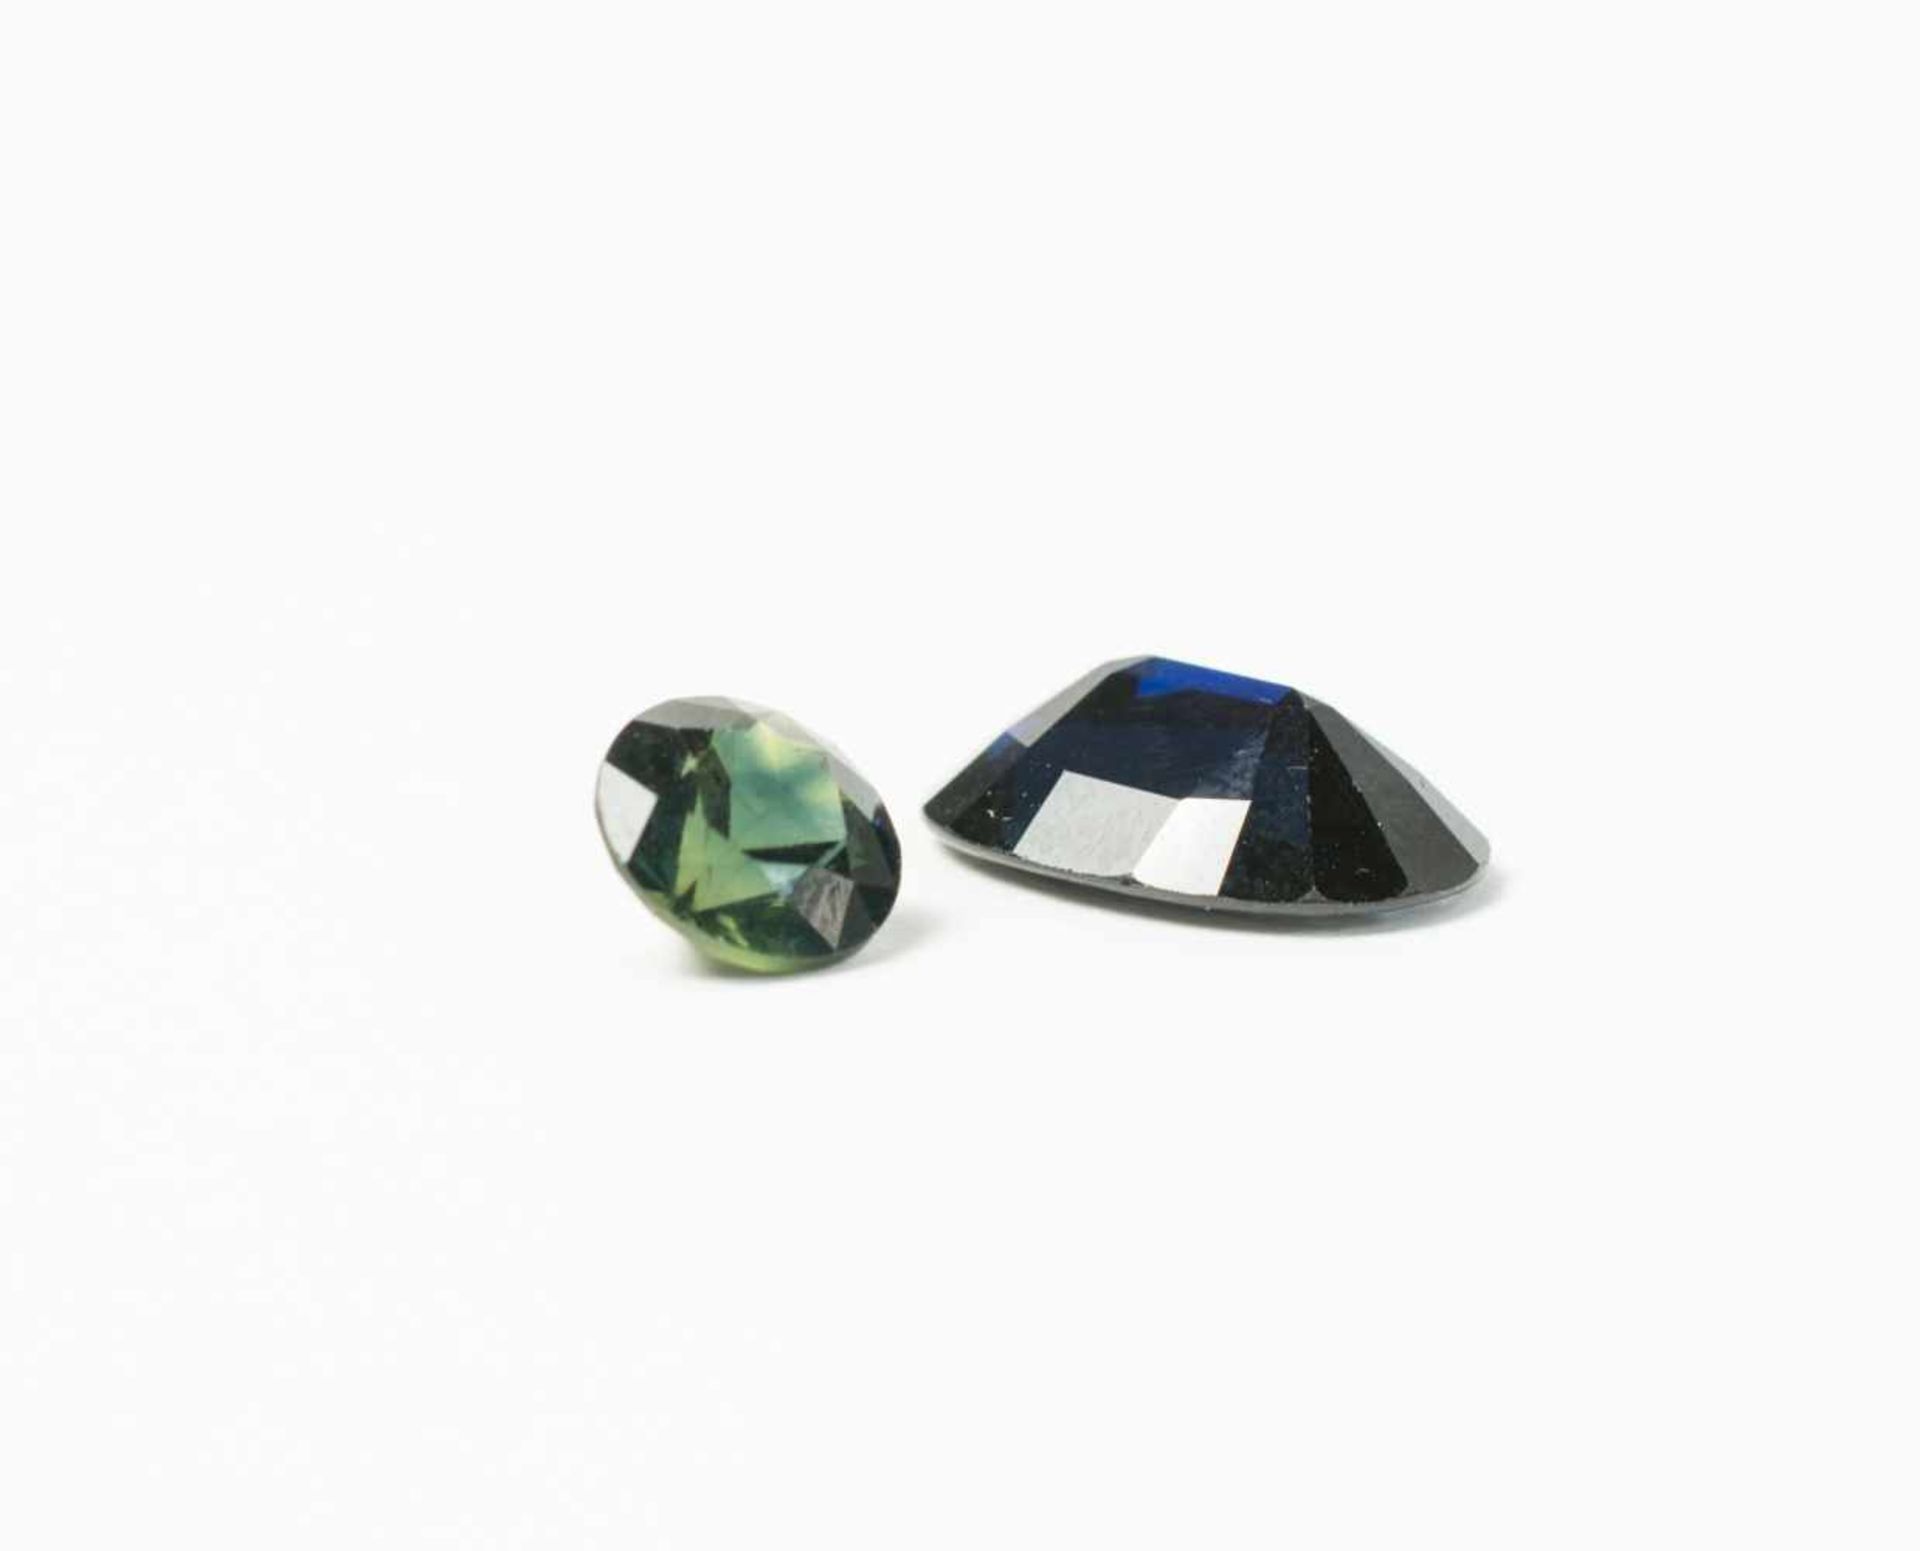 2 lose Edelsteine Grün-Blauer Saphir, 2,01 ct und blauer Saphir, 6,15 ct, Länge 0,74 cm und 1,43 cm,